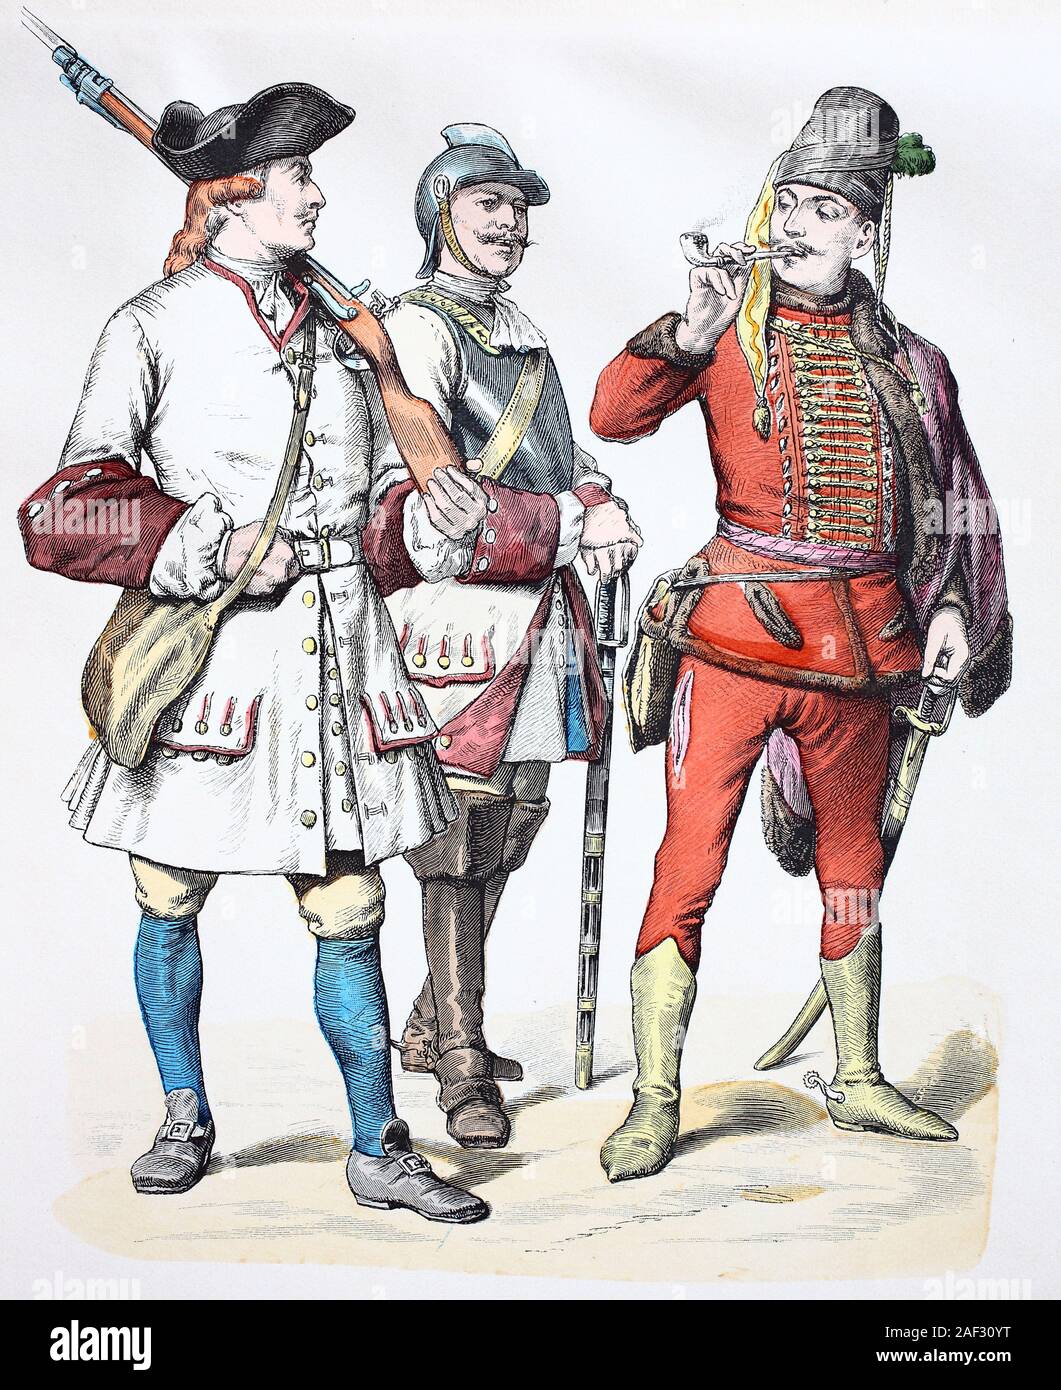 National costume, clothes, history of the costumes, military uniform from Austria, in 1728, Volkstracht, Kleidung, Geschichte der Kostüme, Militäruniform aus Österreich, 1728 Stock Photo